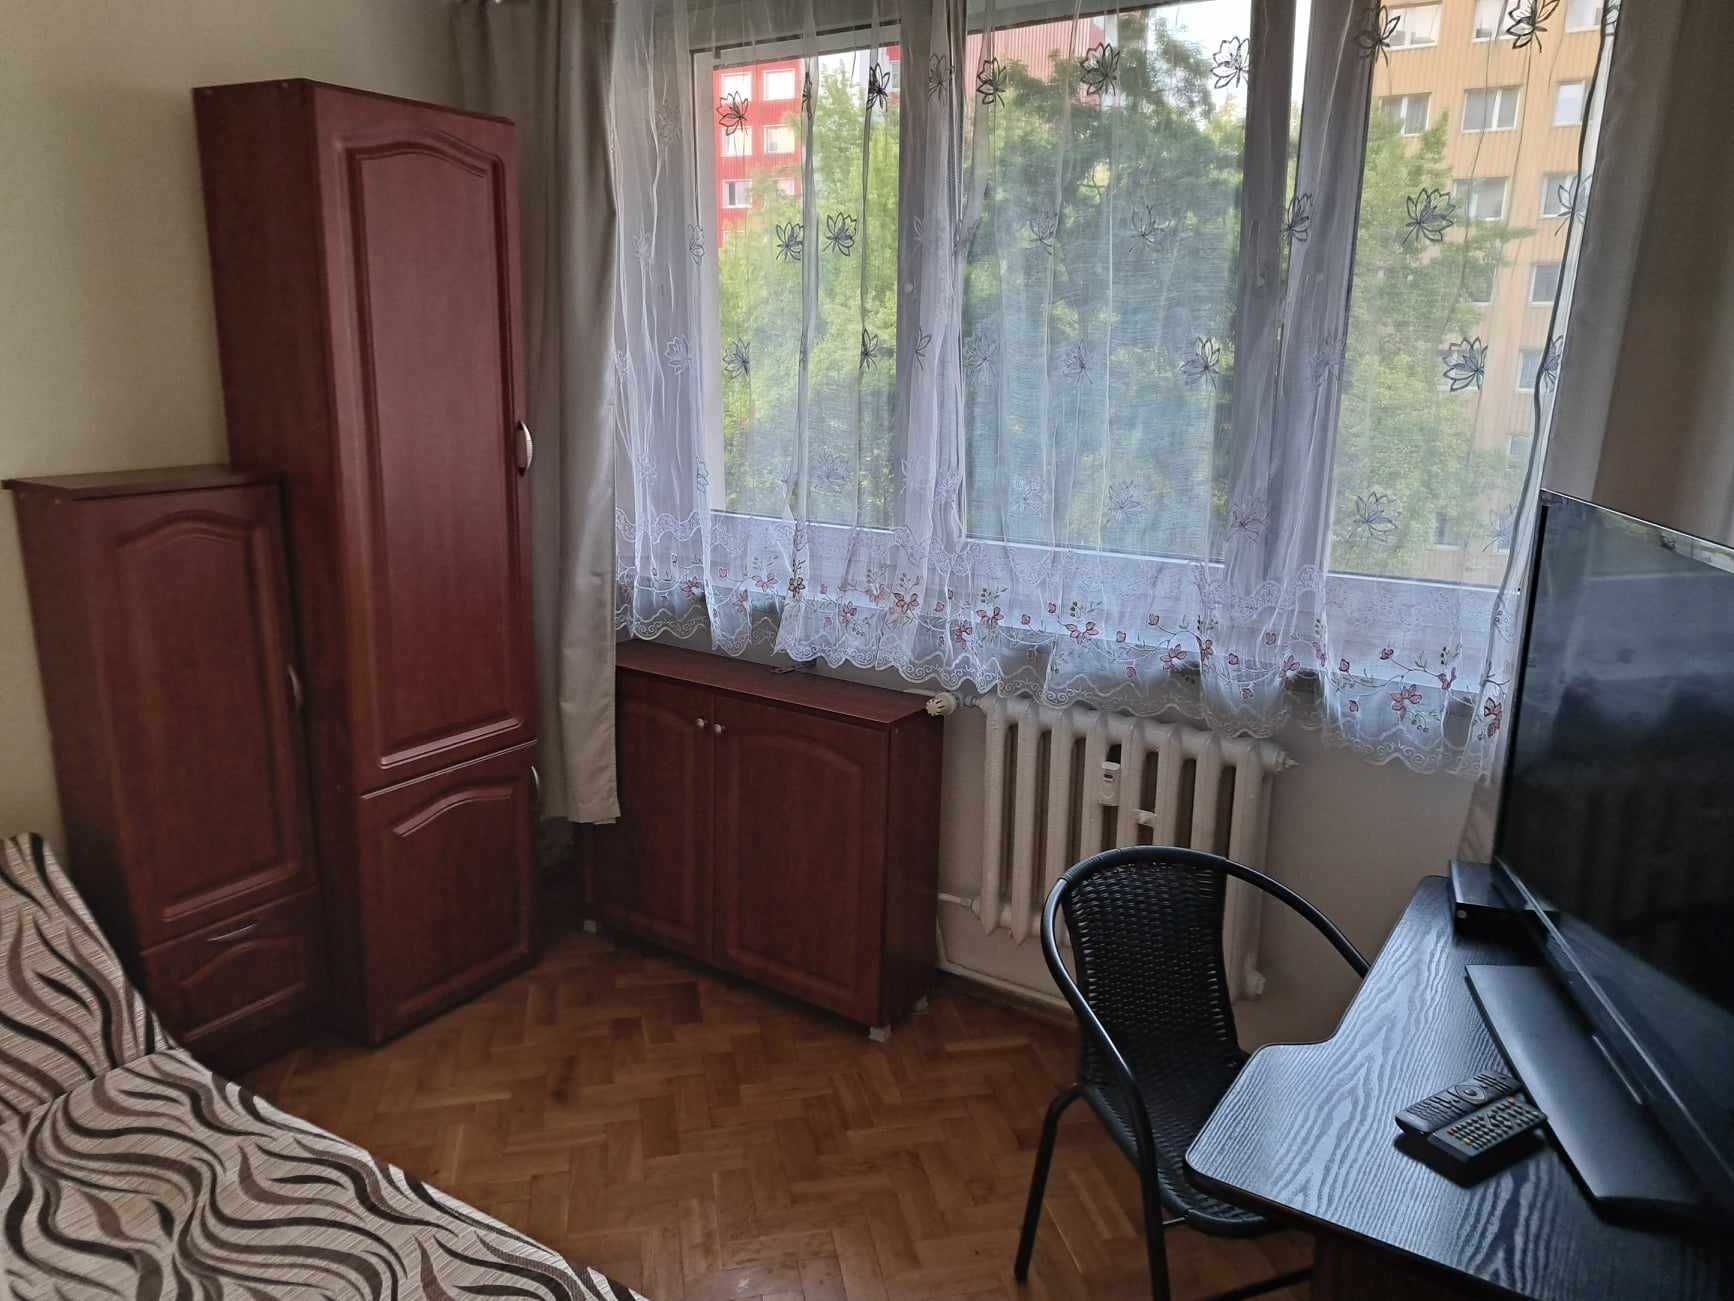 Mieszkanie na wynajem Lublin ul. Okrzei CENTRUM 4 POKOJE